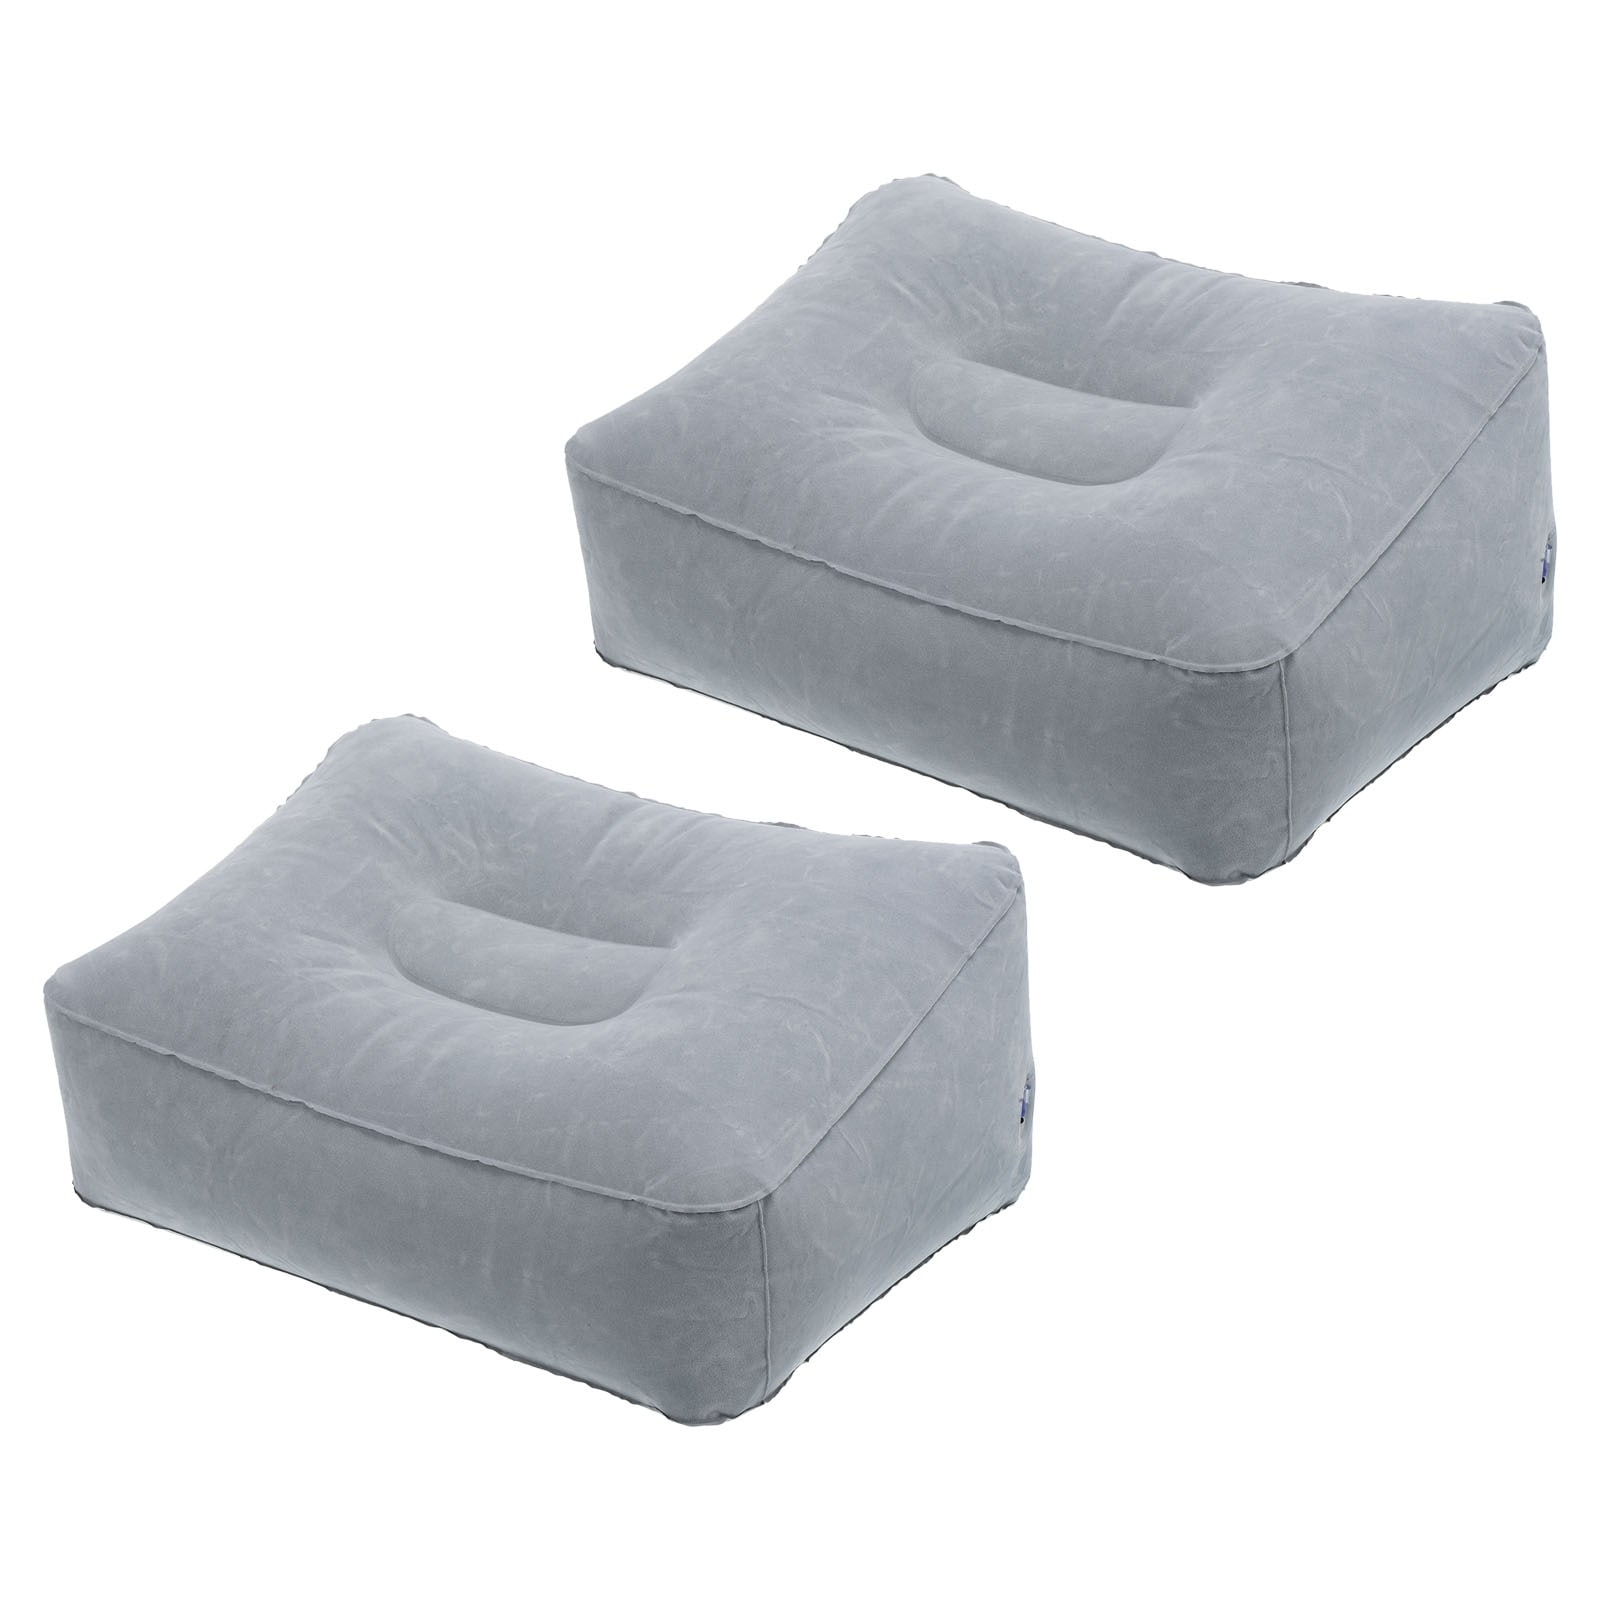 https://ak1.ostkcdn.com/images/products/is/images/direct/9d37497664e566085d8fbb24977d8267a3795391/2pcs-Travel-Foot-Rest-Pillow-Inflatable-Foot-Rest-Mat-Leg-Rest-Pillow.jpg